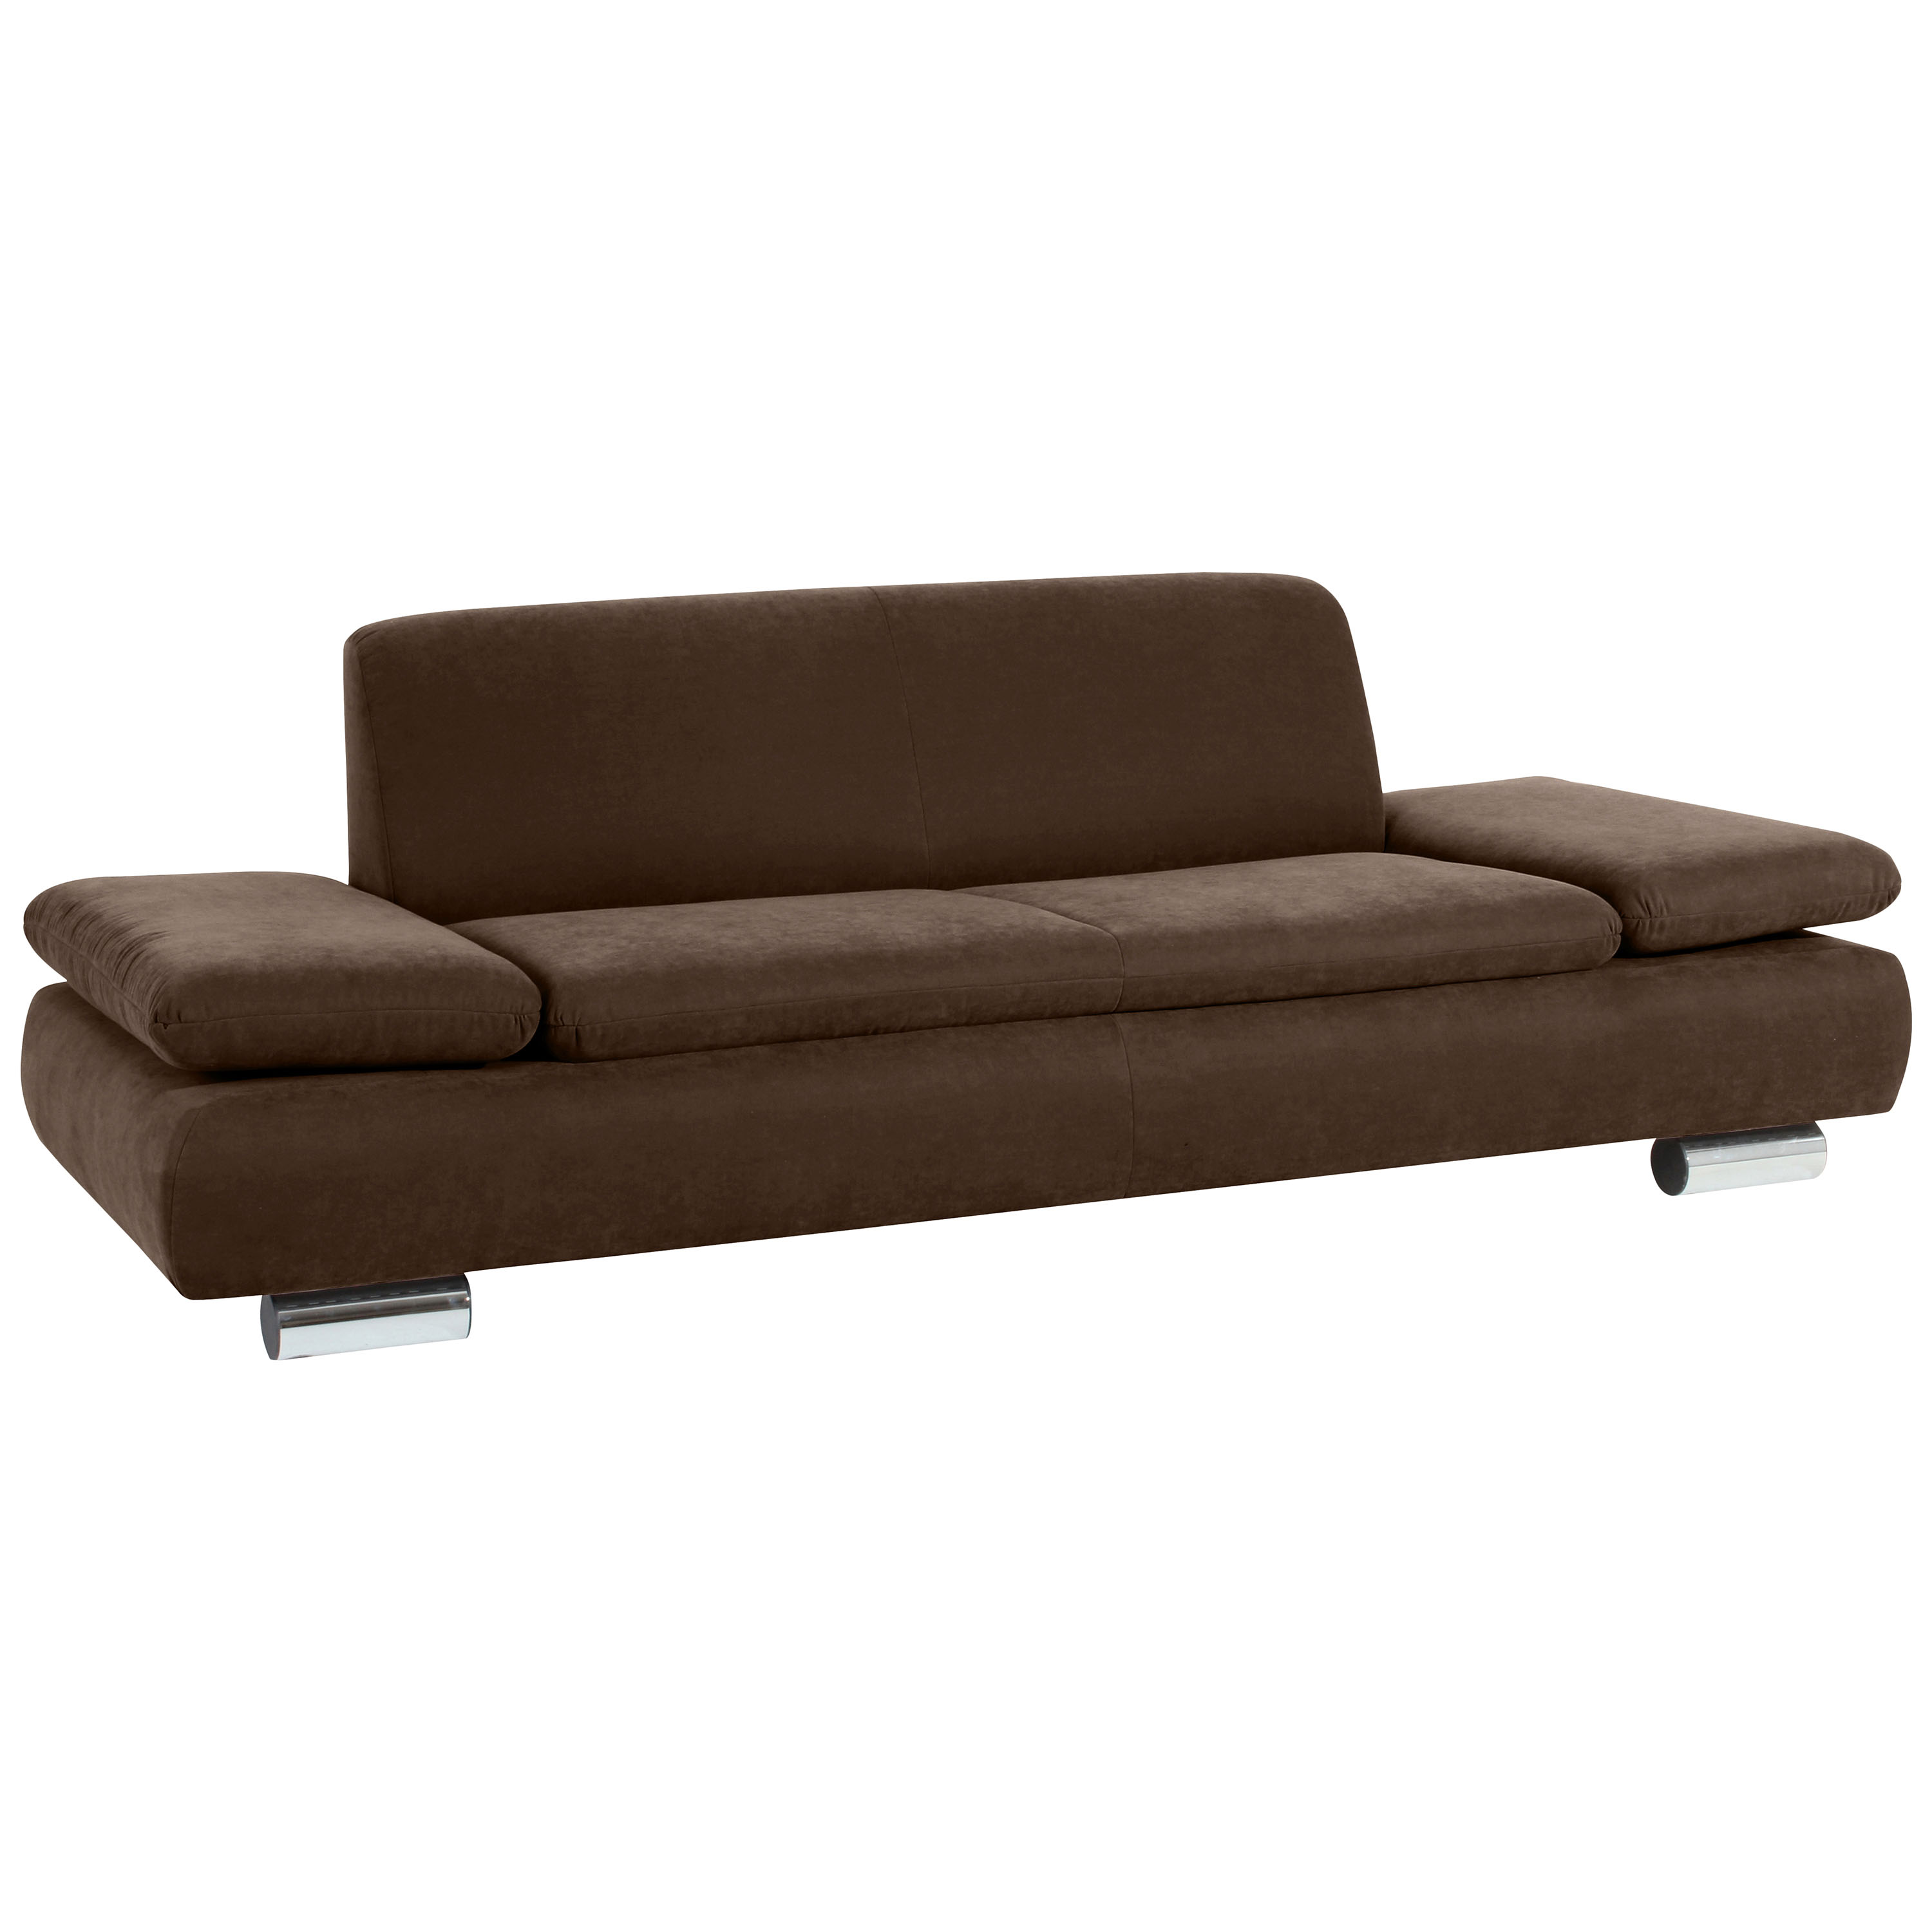 formschönes braunes 2,5-sitzer sofa mit verchromten metallfüssen